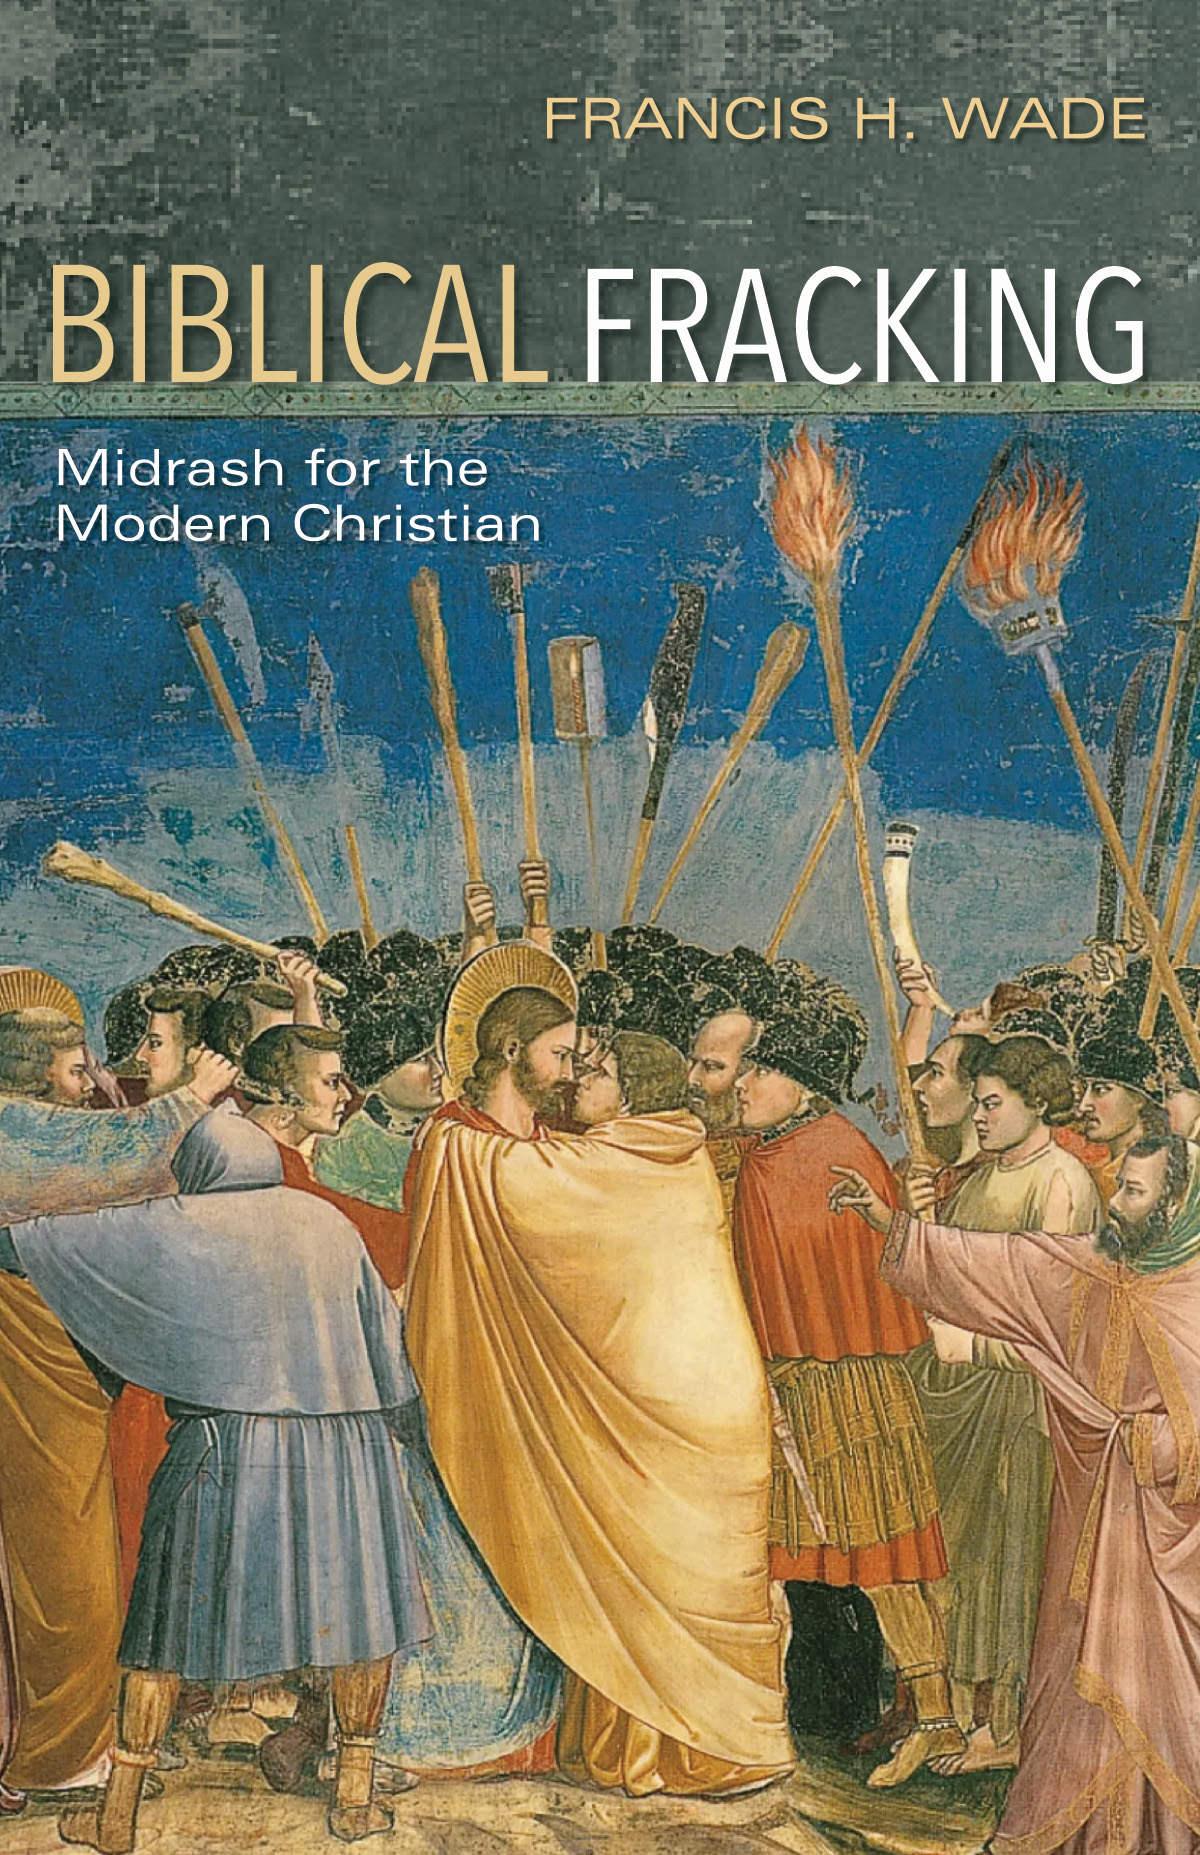 Biblical Fracking: Midrash for the Modern Christian